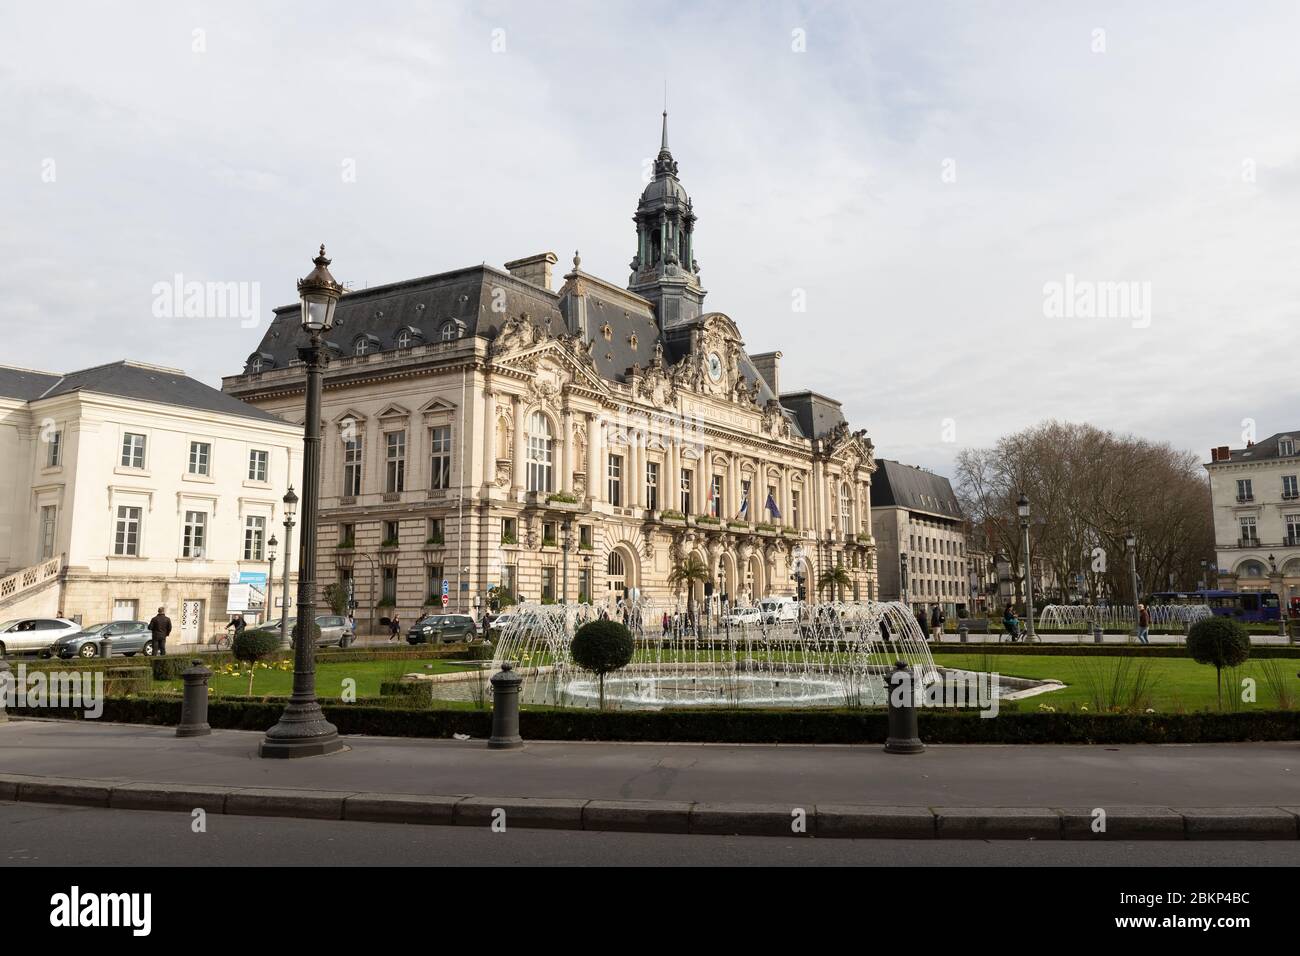 Tours, France - 8 février 2020: Les gens marchant devant le Palais de Justice (Cour de Justice) un jour d'hiver dans le centre-ville Banque D'Images